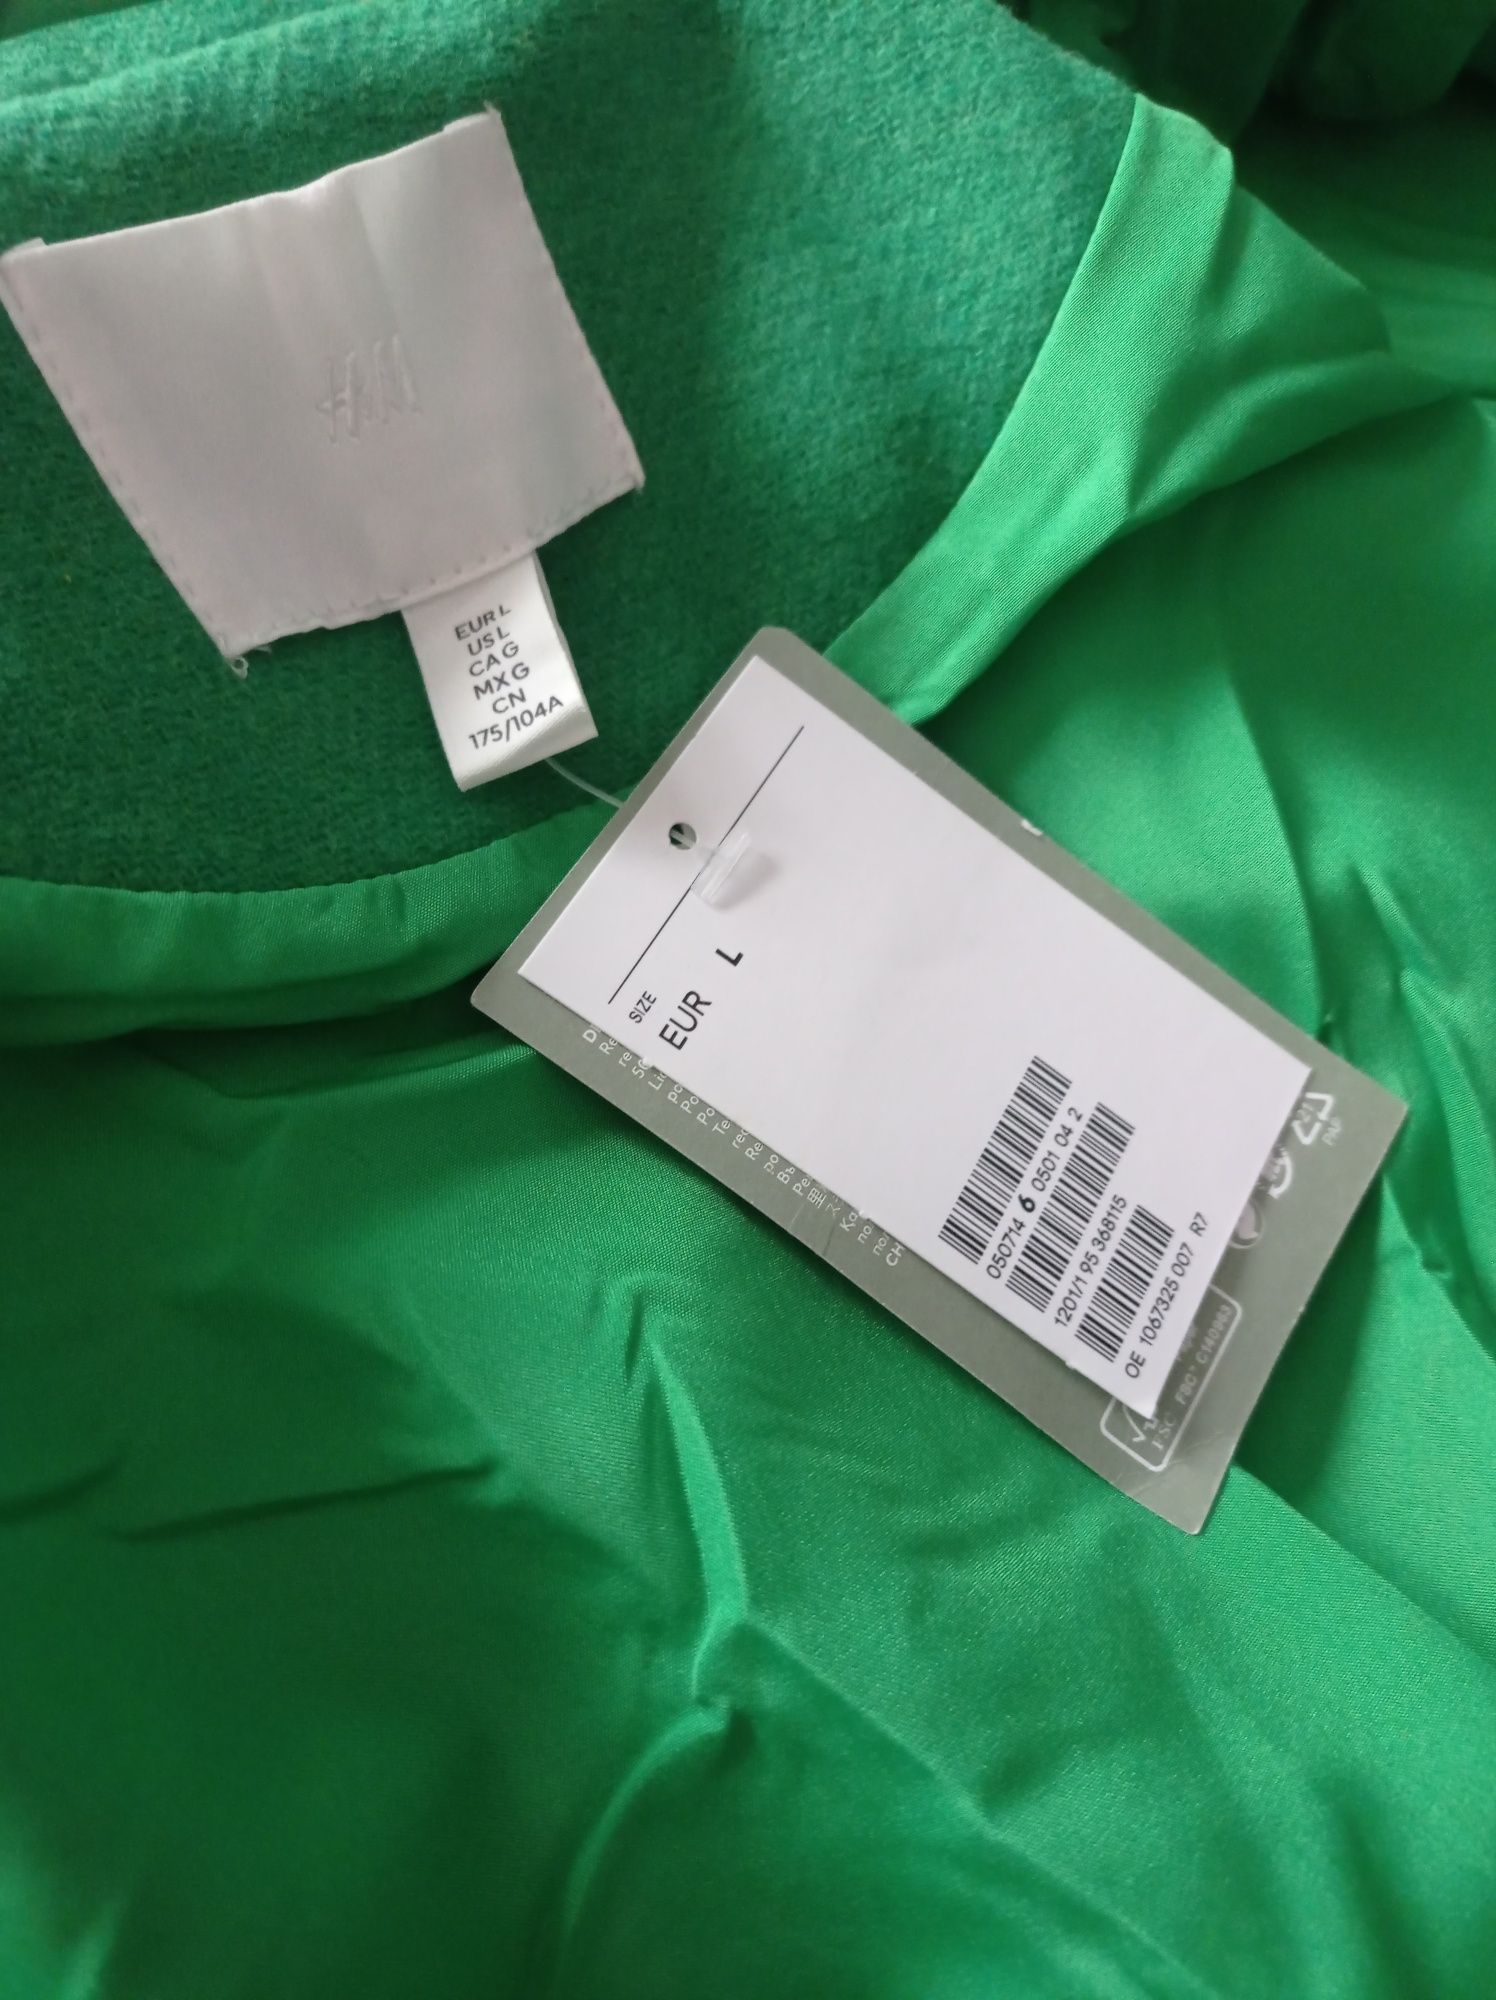 Płaszcz wiosna - jesień zielony H&M nowy